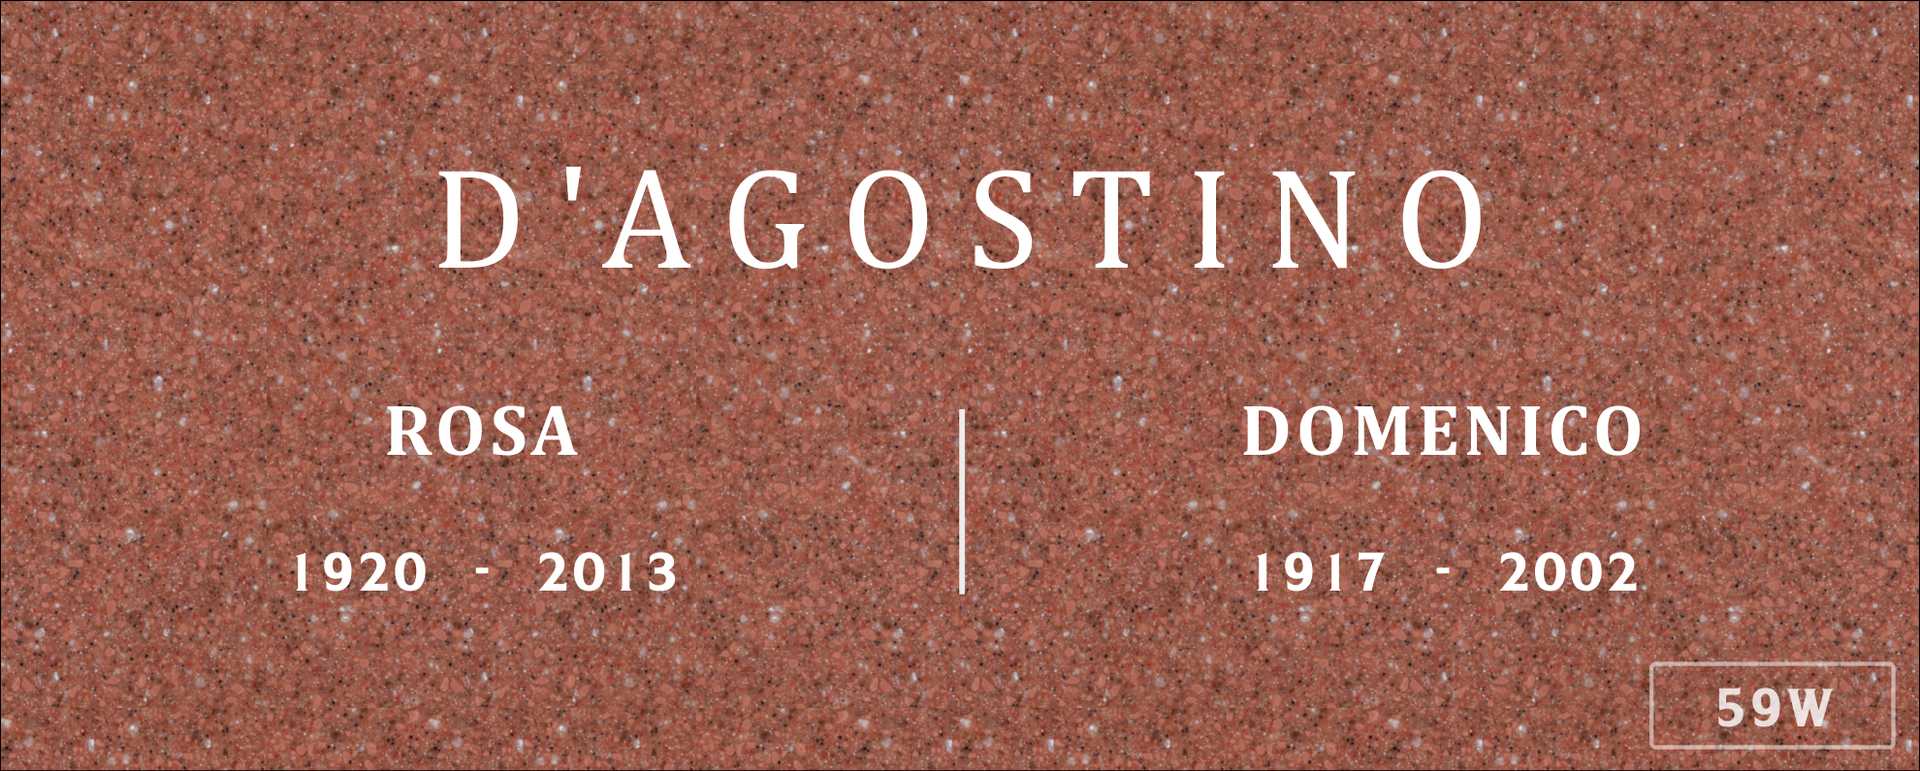 Domenico D'Agostino's grave